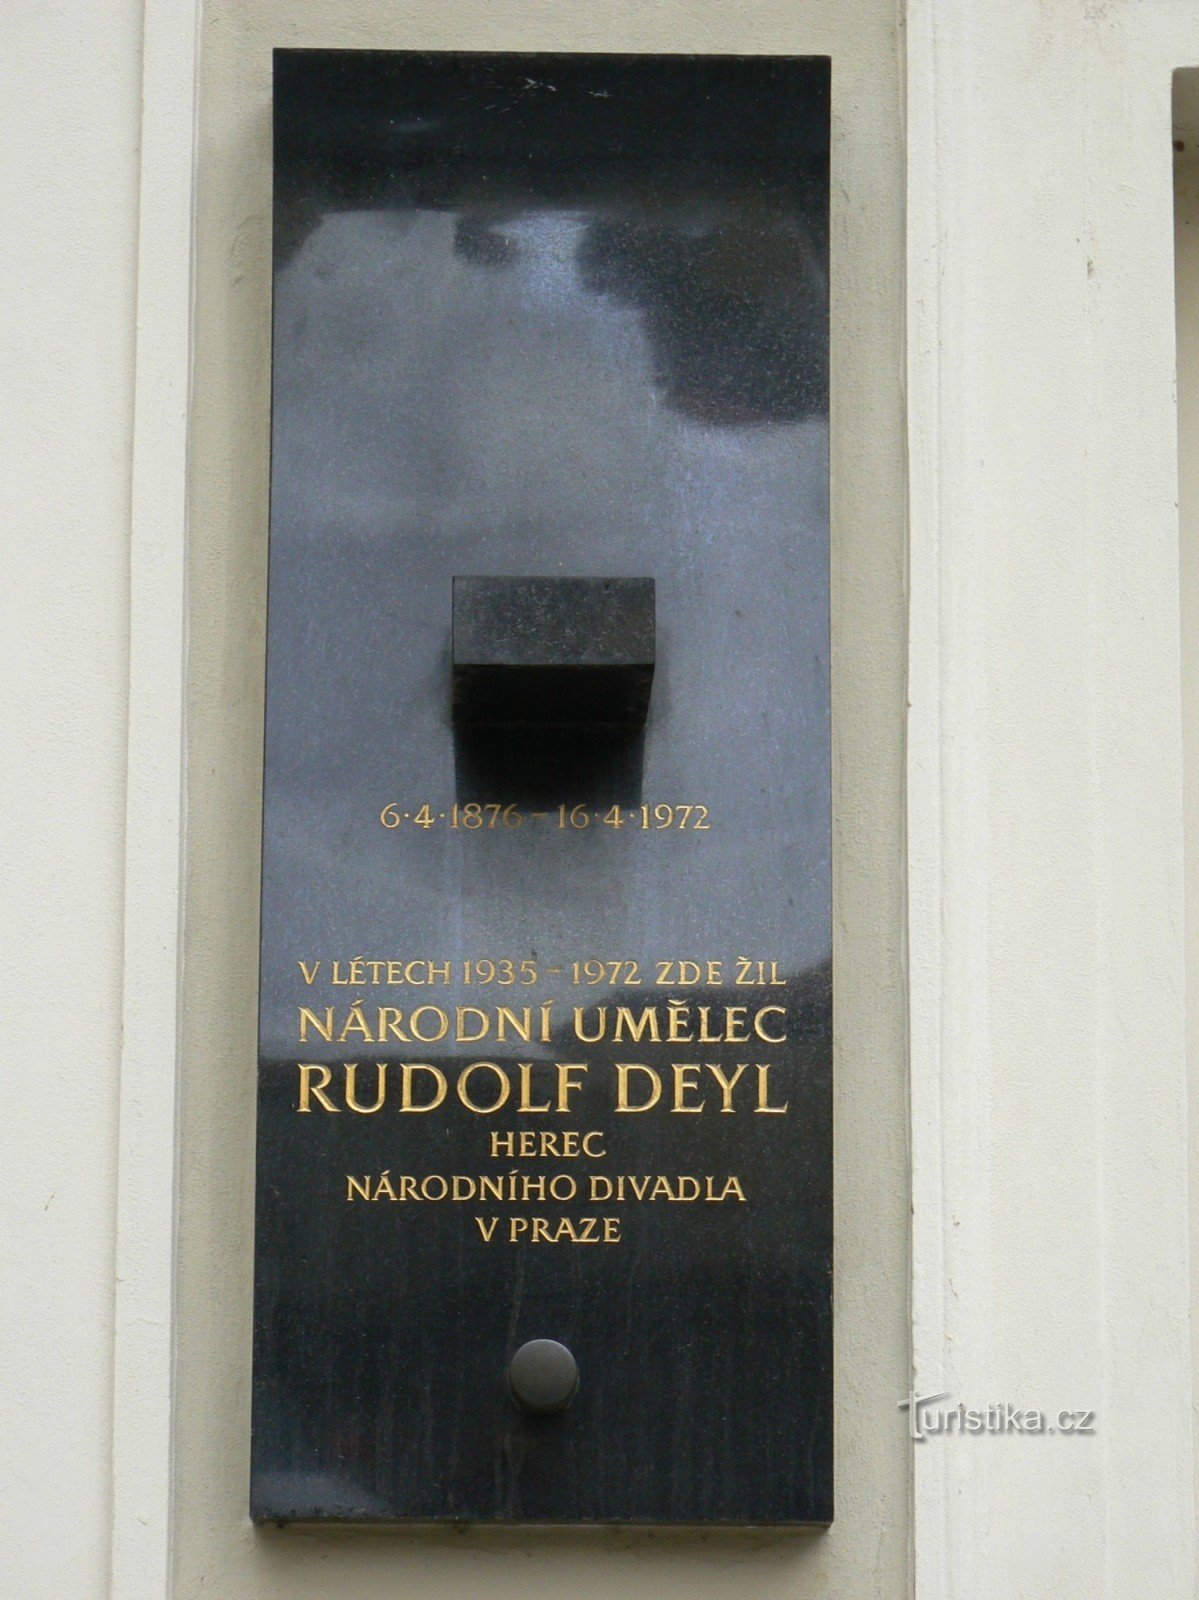 Tablica pamiątkowa Rudolf Deyl